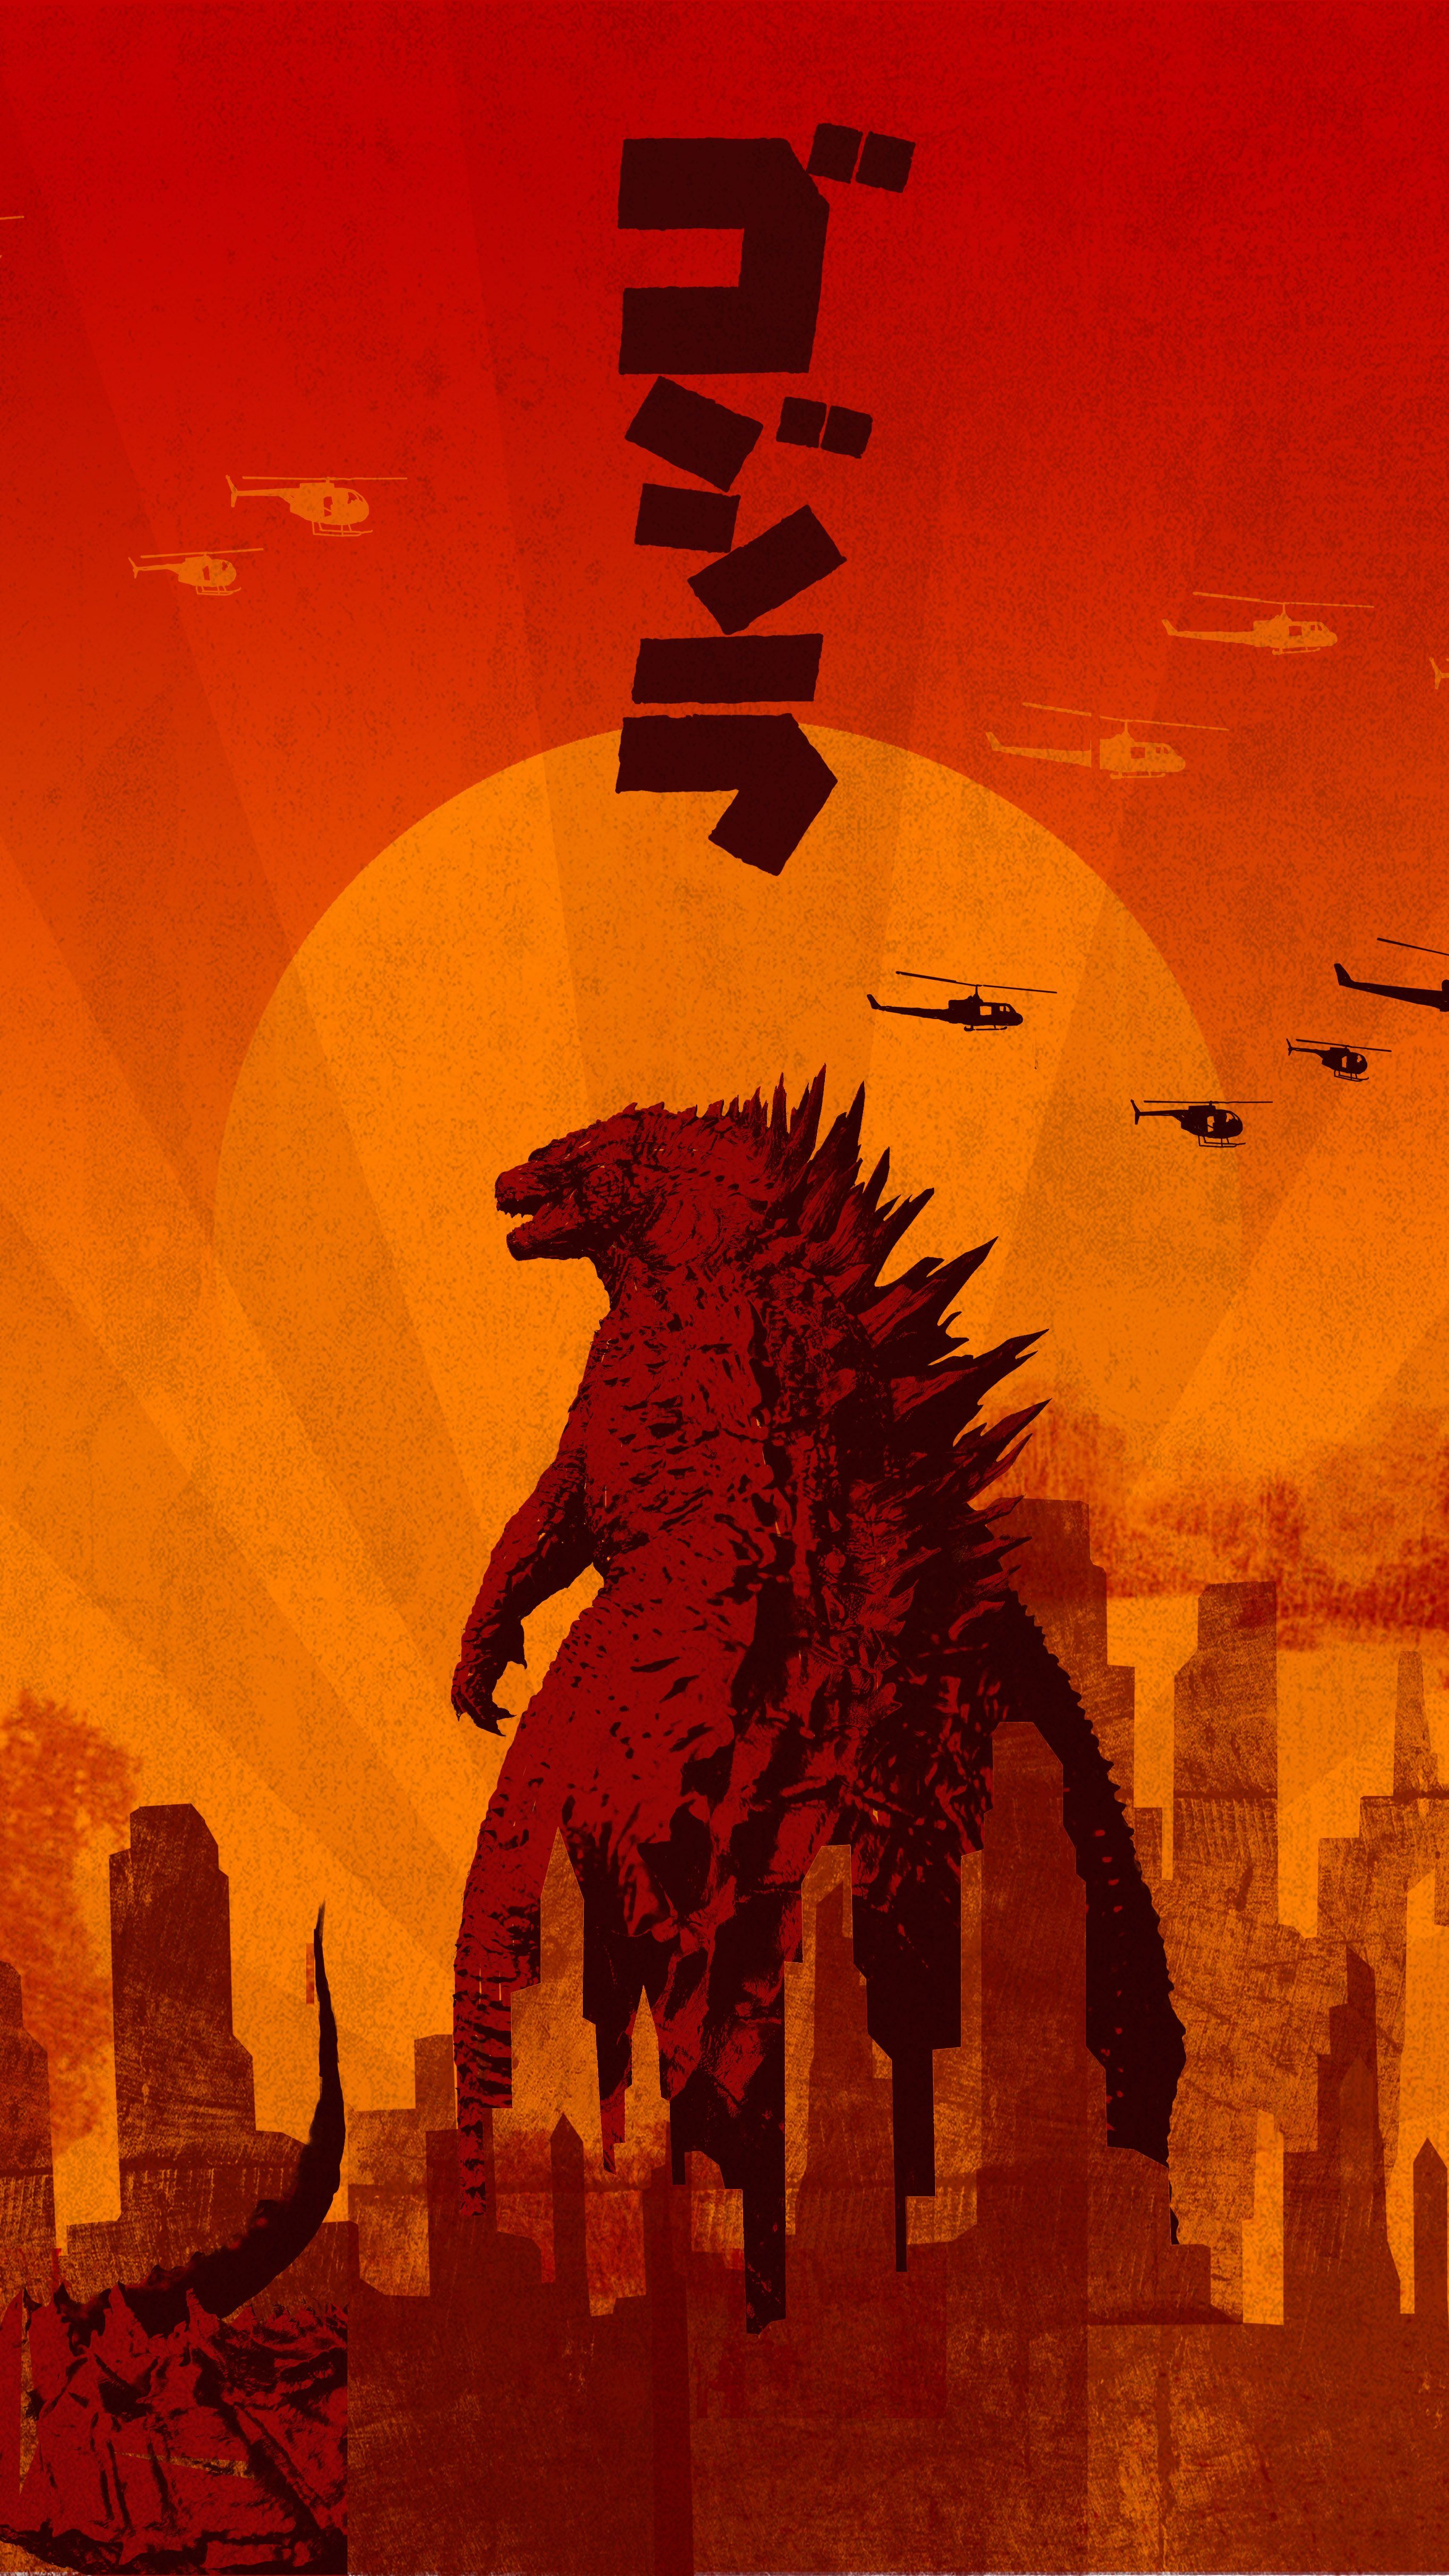 Godzilla Phone Wallpaper Free Godzilla Phone Background